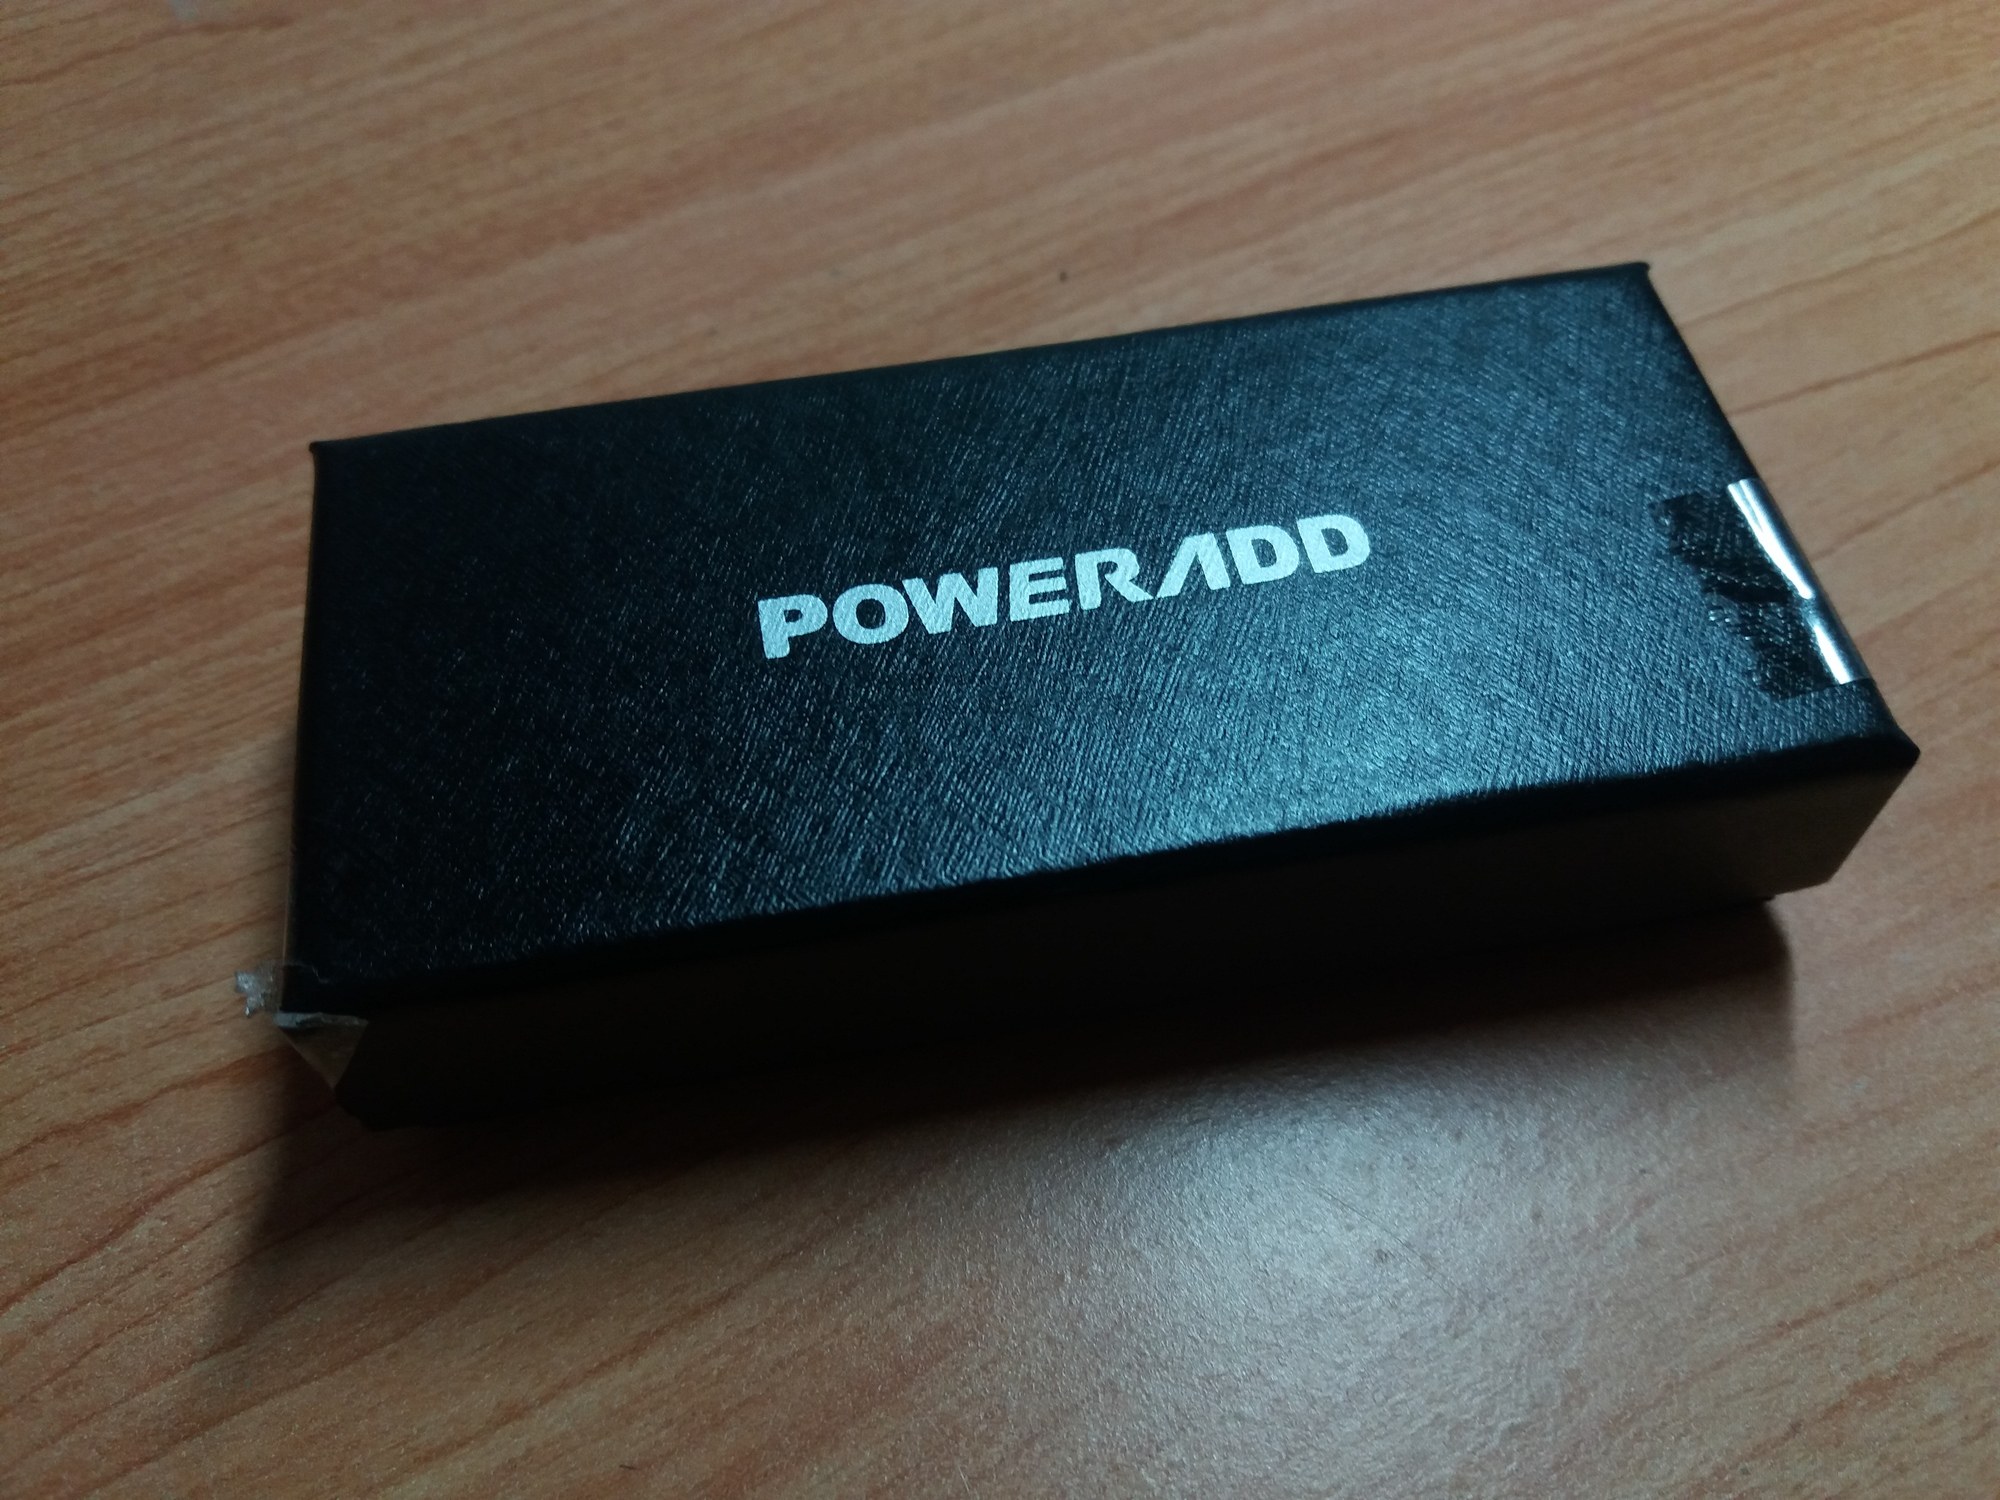 POWERADD 20180821 182535 Test – Clé USB POWERADD, une clé au rapport qualité/prix excellent 3.0